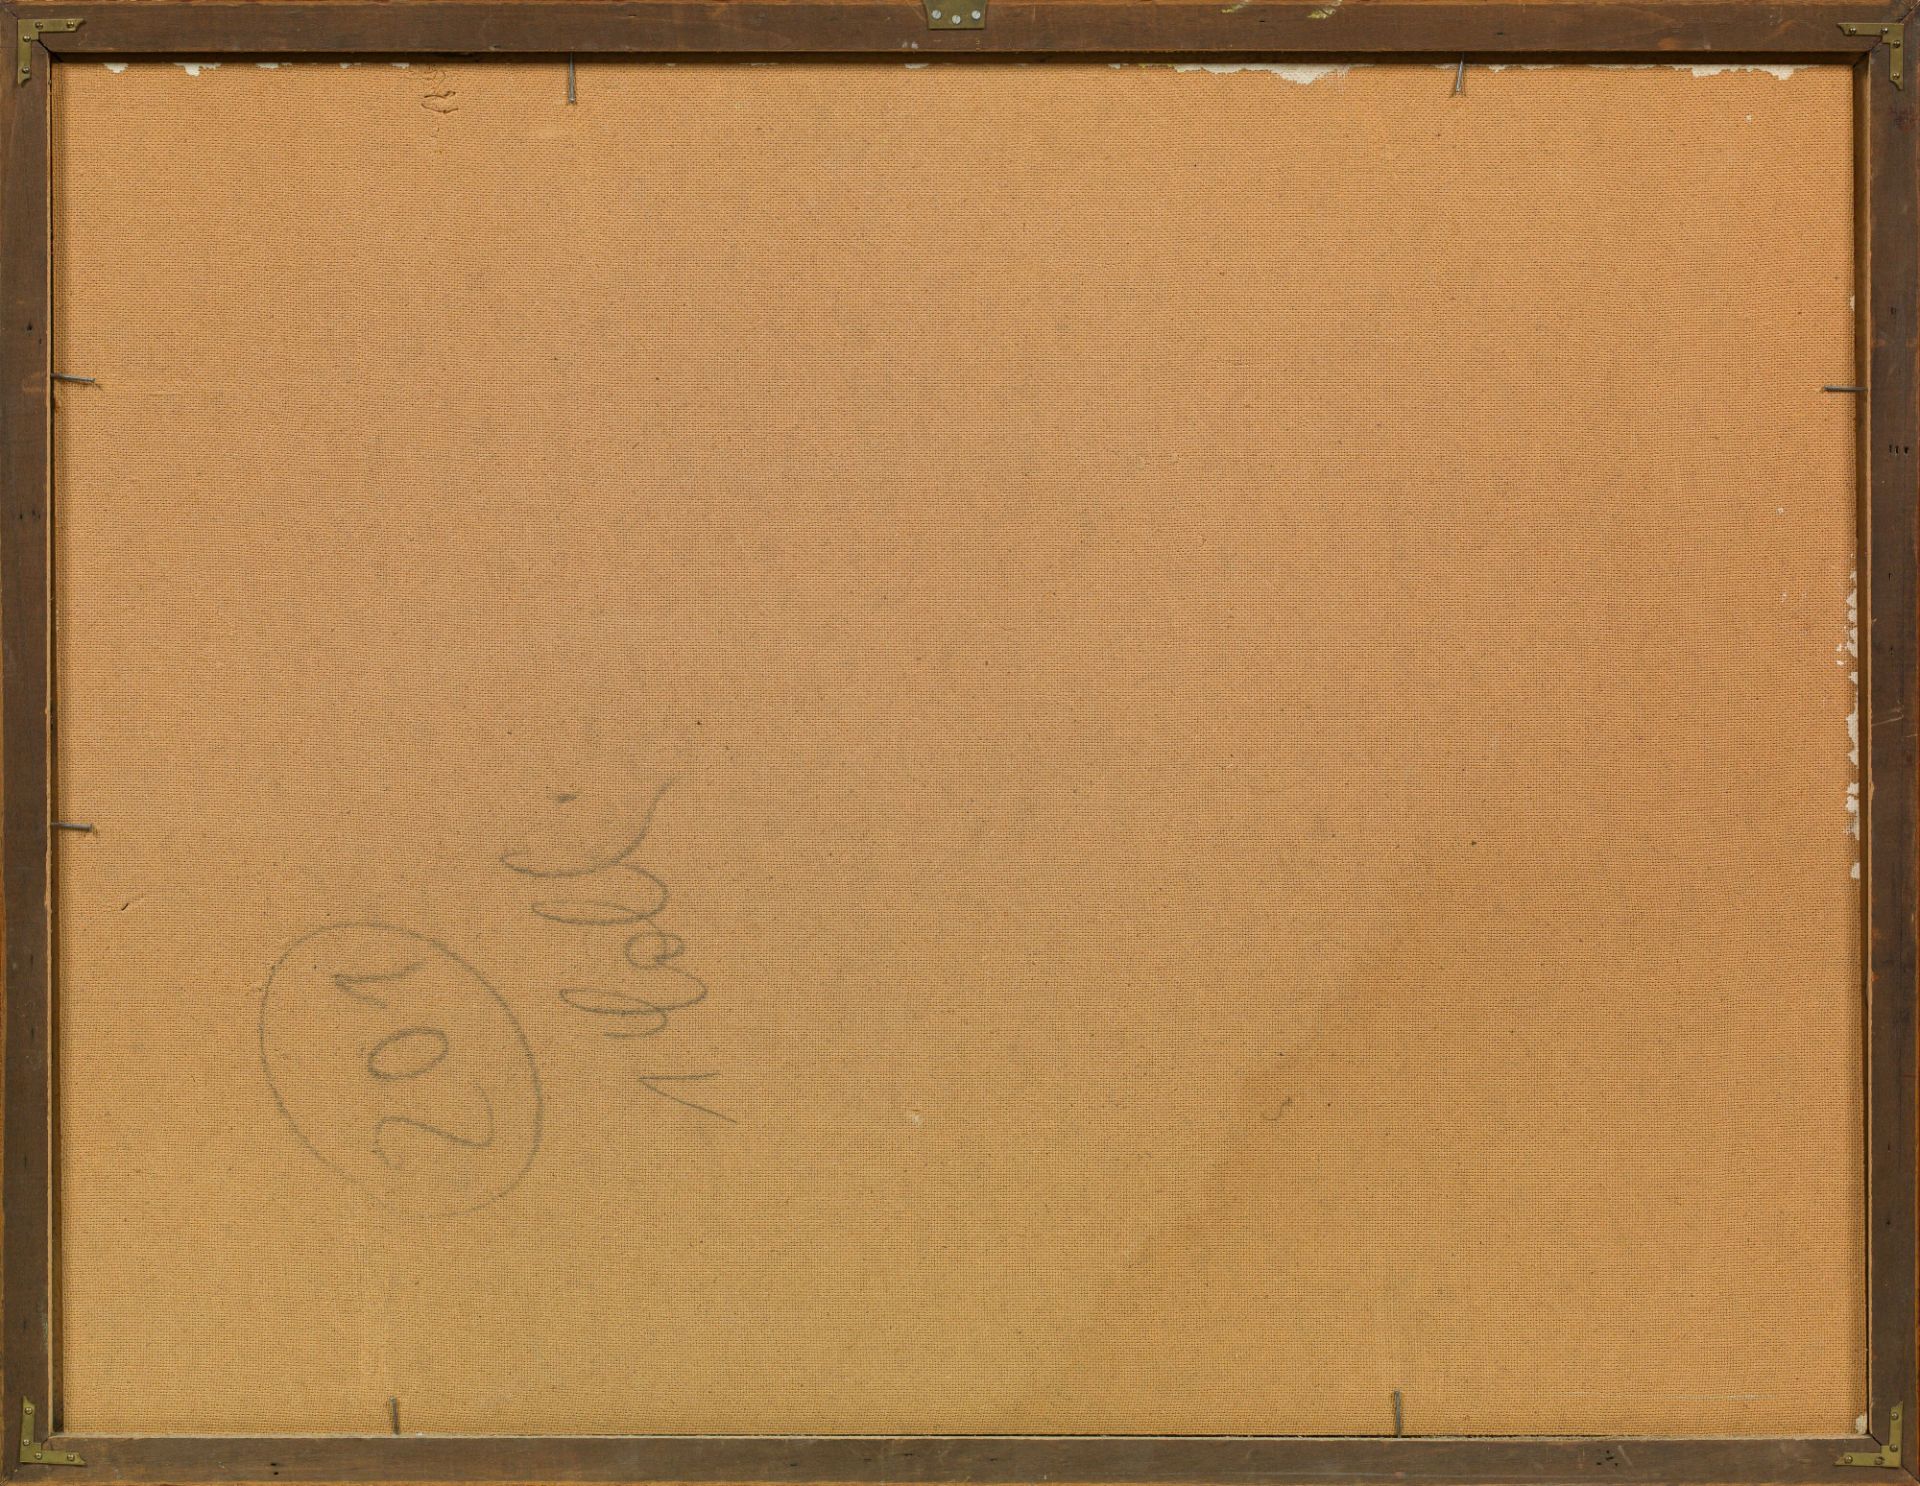 Gerhild DiesnerIbis und Sonne aus der Schöpfung1966oil on hardboard; framed63.5 x 83.5 cmtitled, - Image 3 of 3